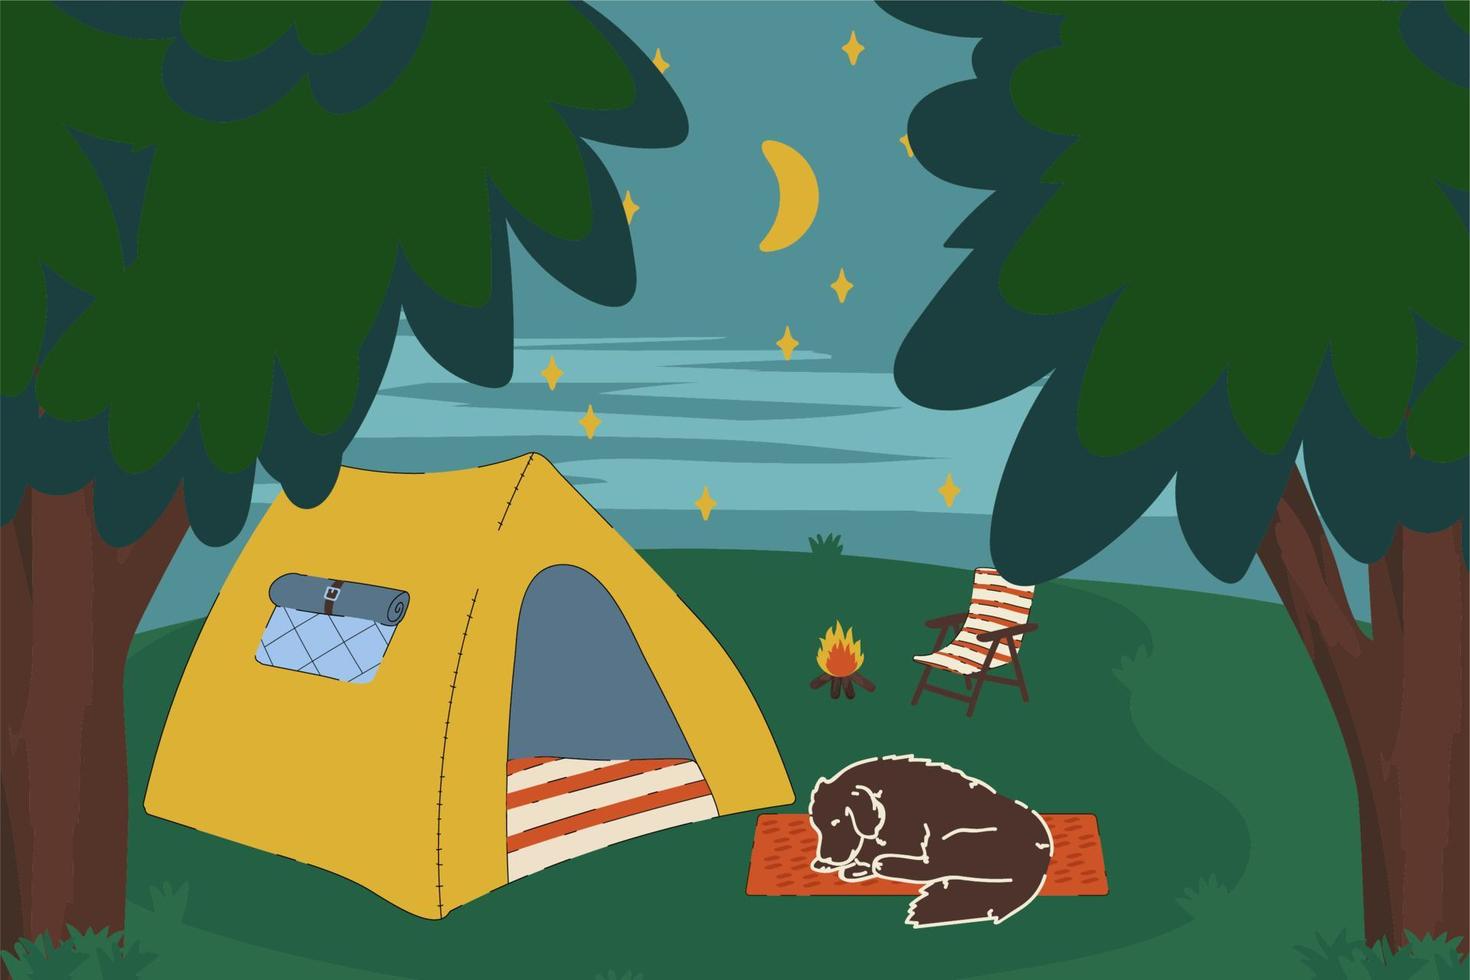 nacht kamperen met een tent. het concept van een stacaravan in het bos met een kampvuur met een hond voor een vakantie op het platteland. illustratie in het vectorleven in het bos. vector illustratie